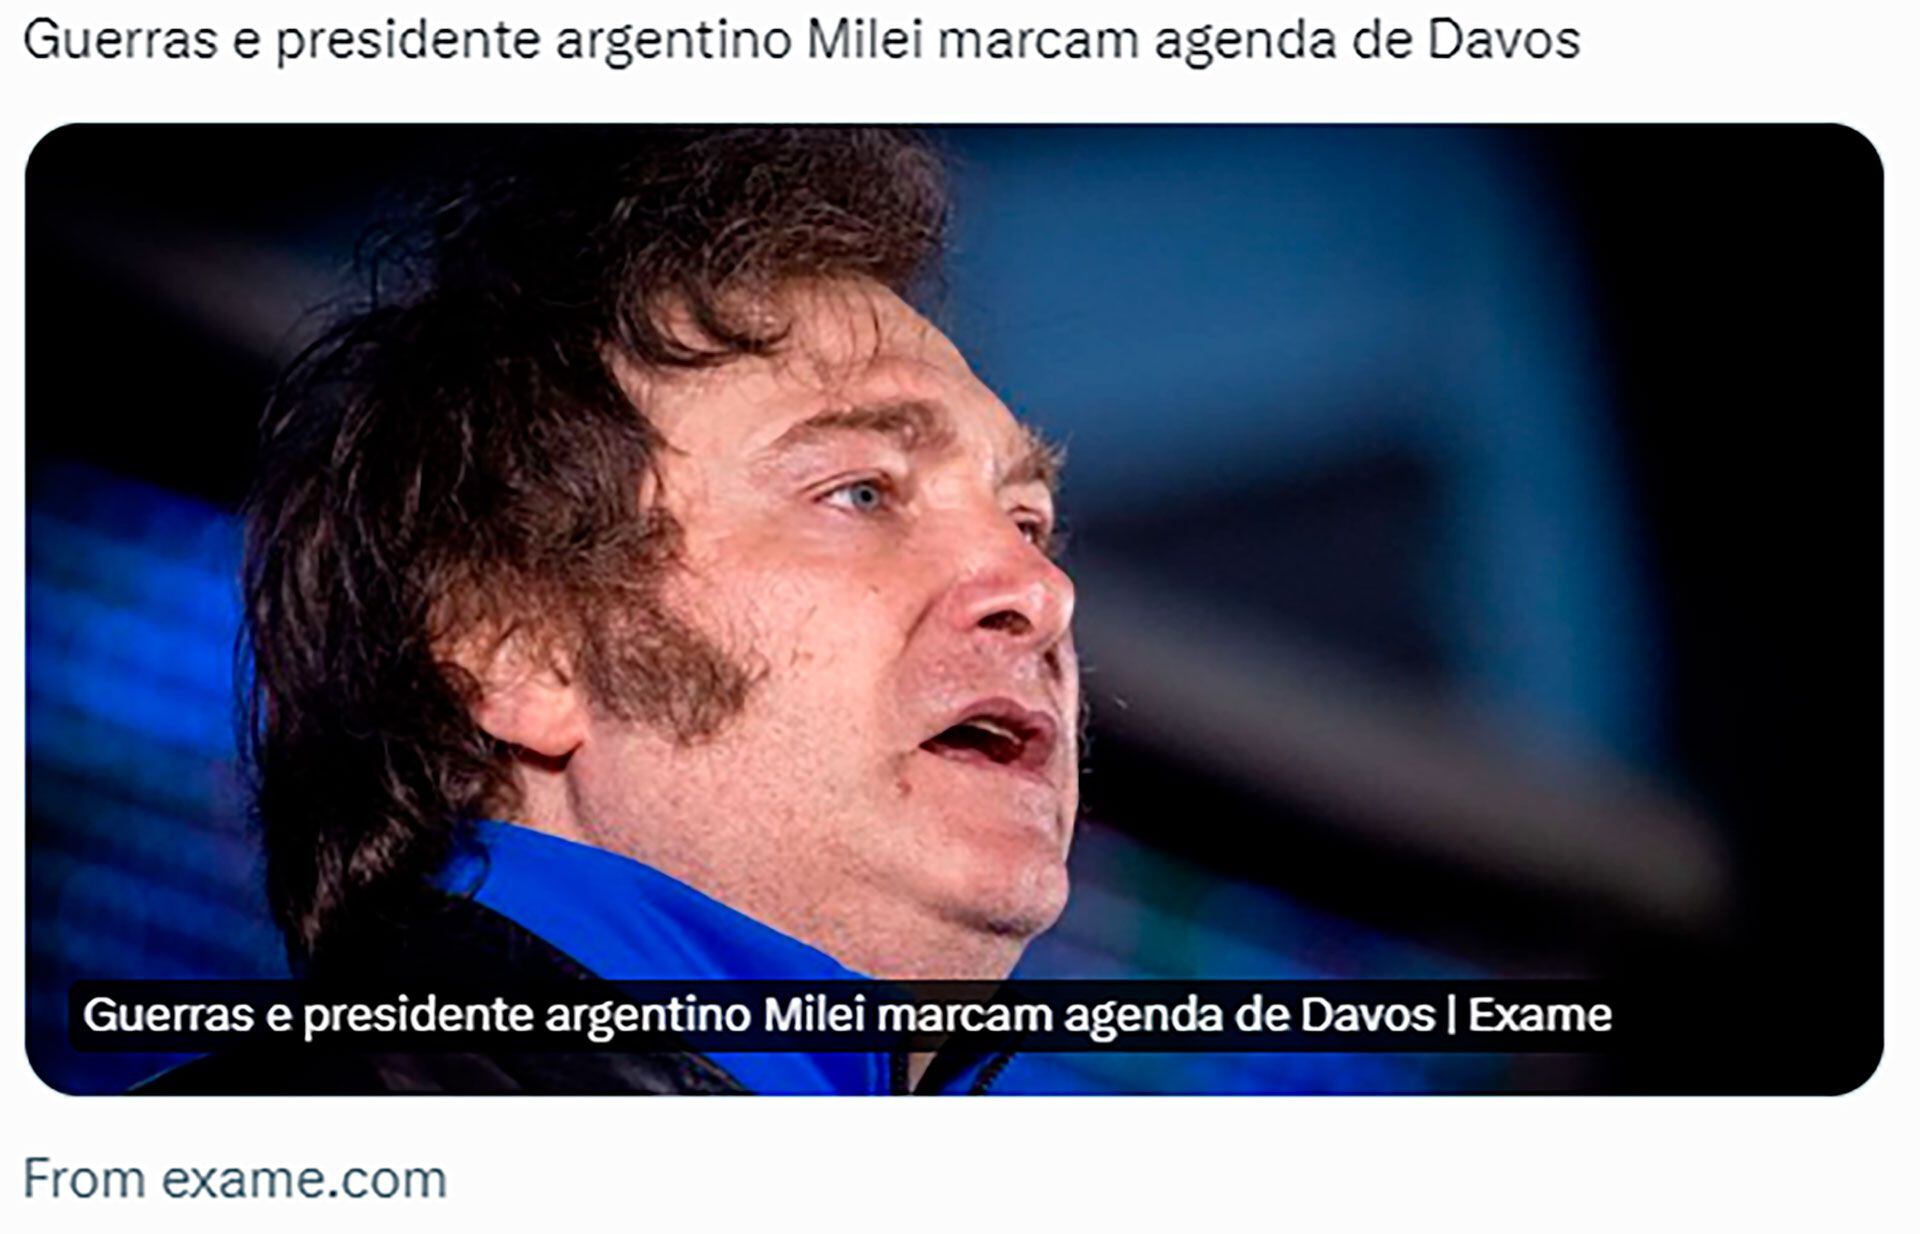 Milei Davos Exame